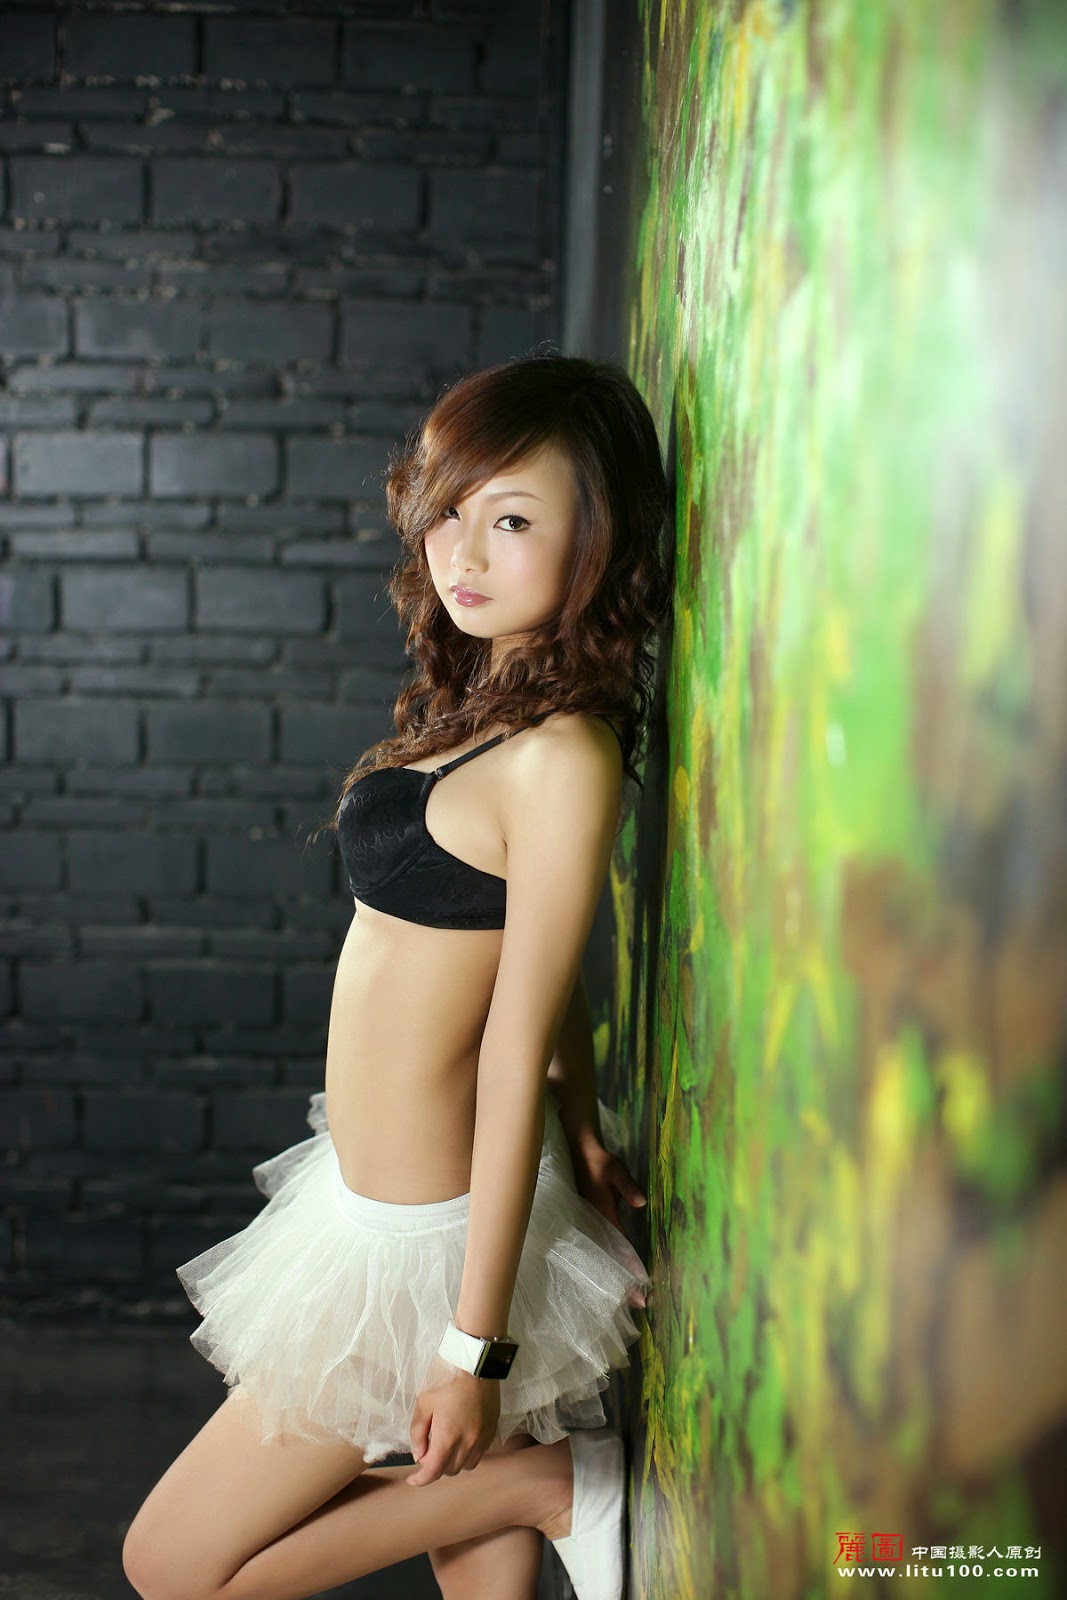 PhimVu Blog: Chinese Nude Model Siao Qian [Litu100